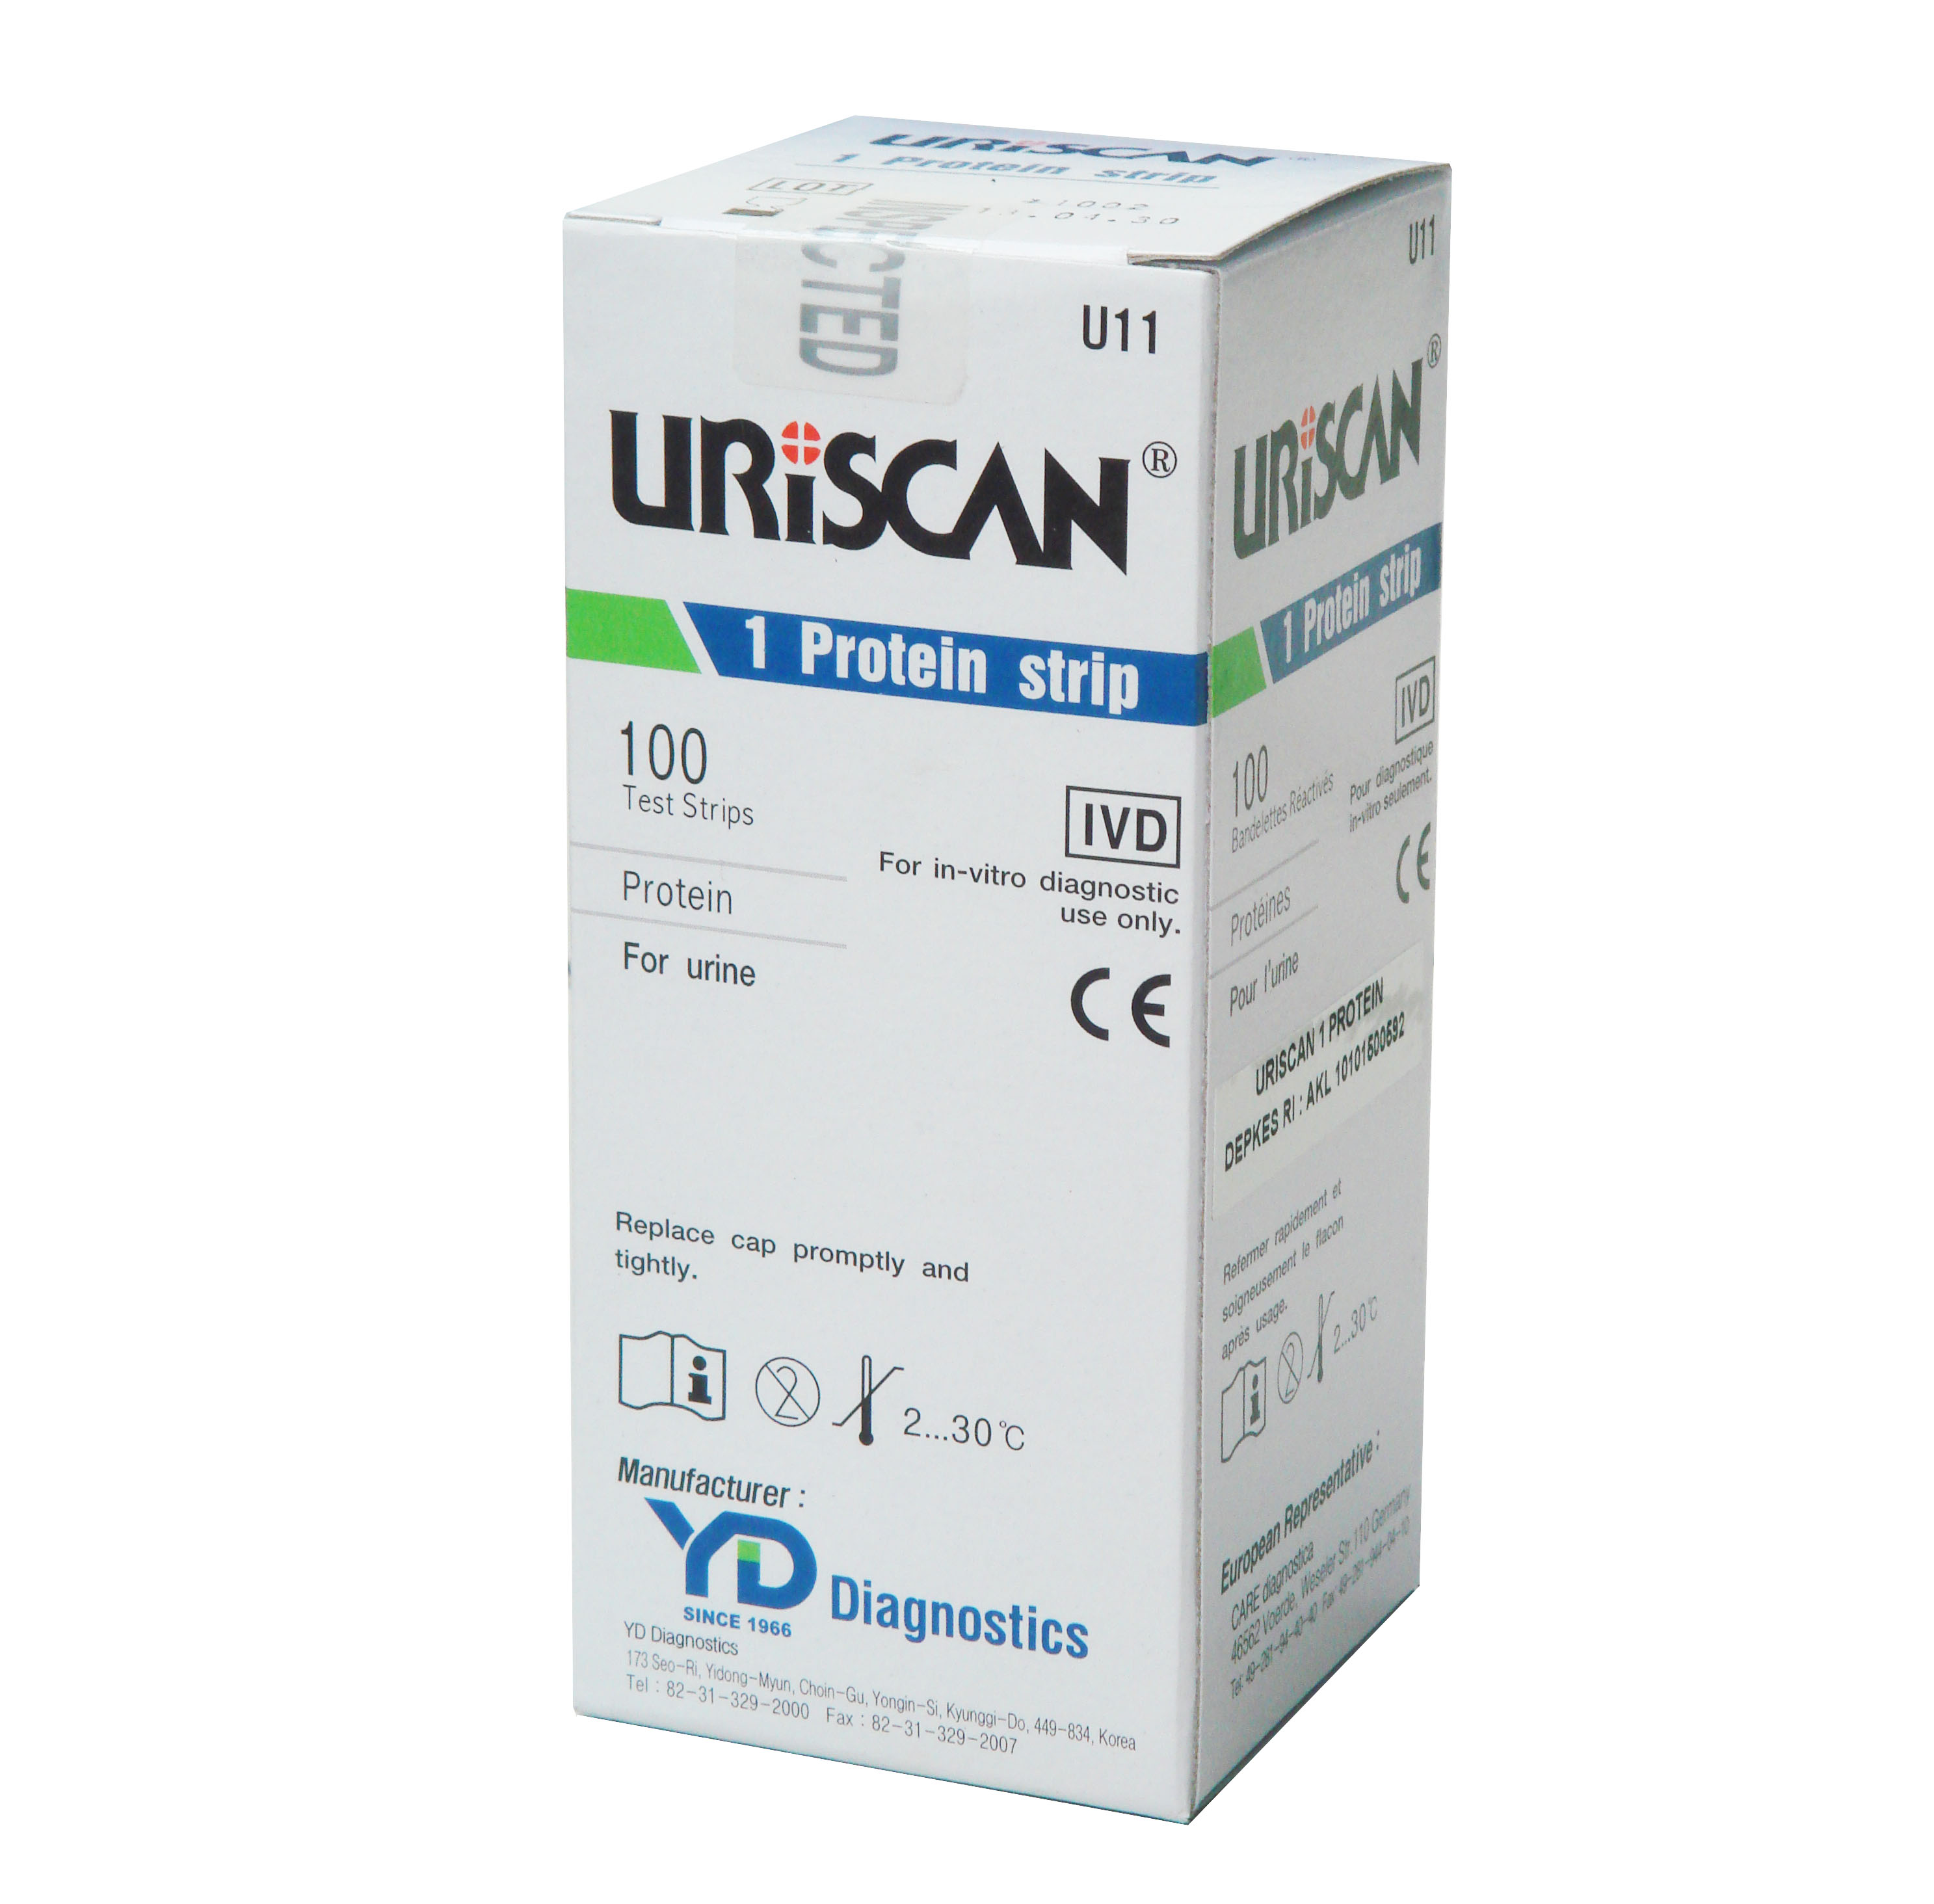 UriScan Protein 1